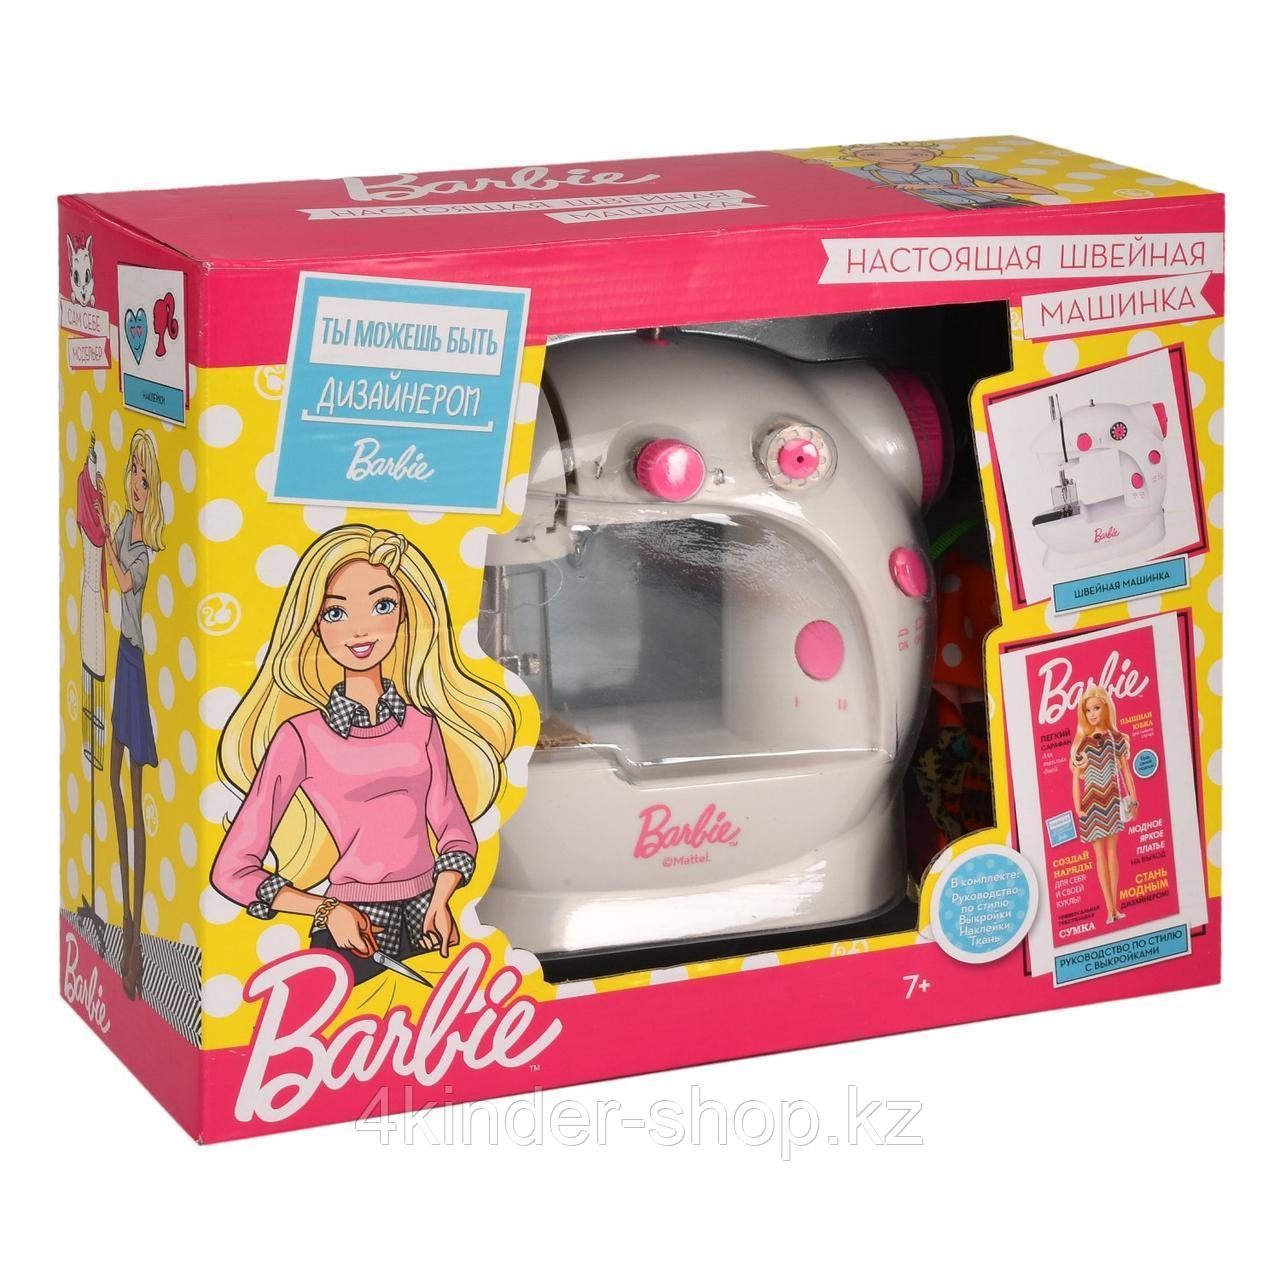 Машинка швейная Barbie с аксессуарами BRB001